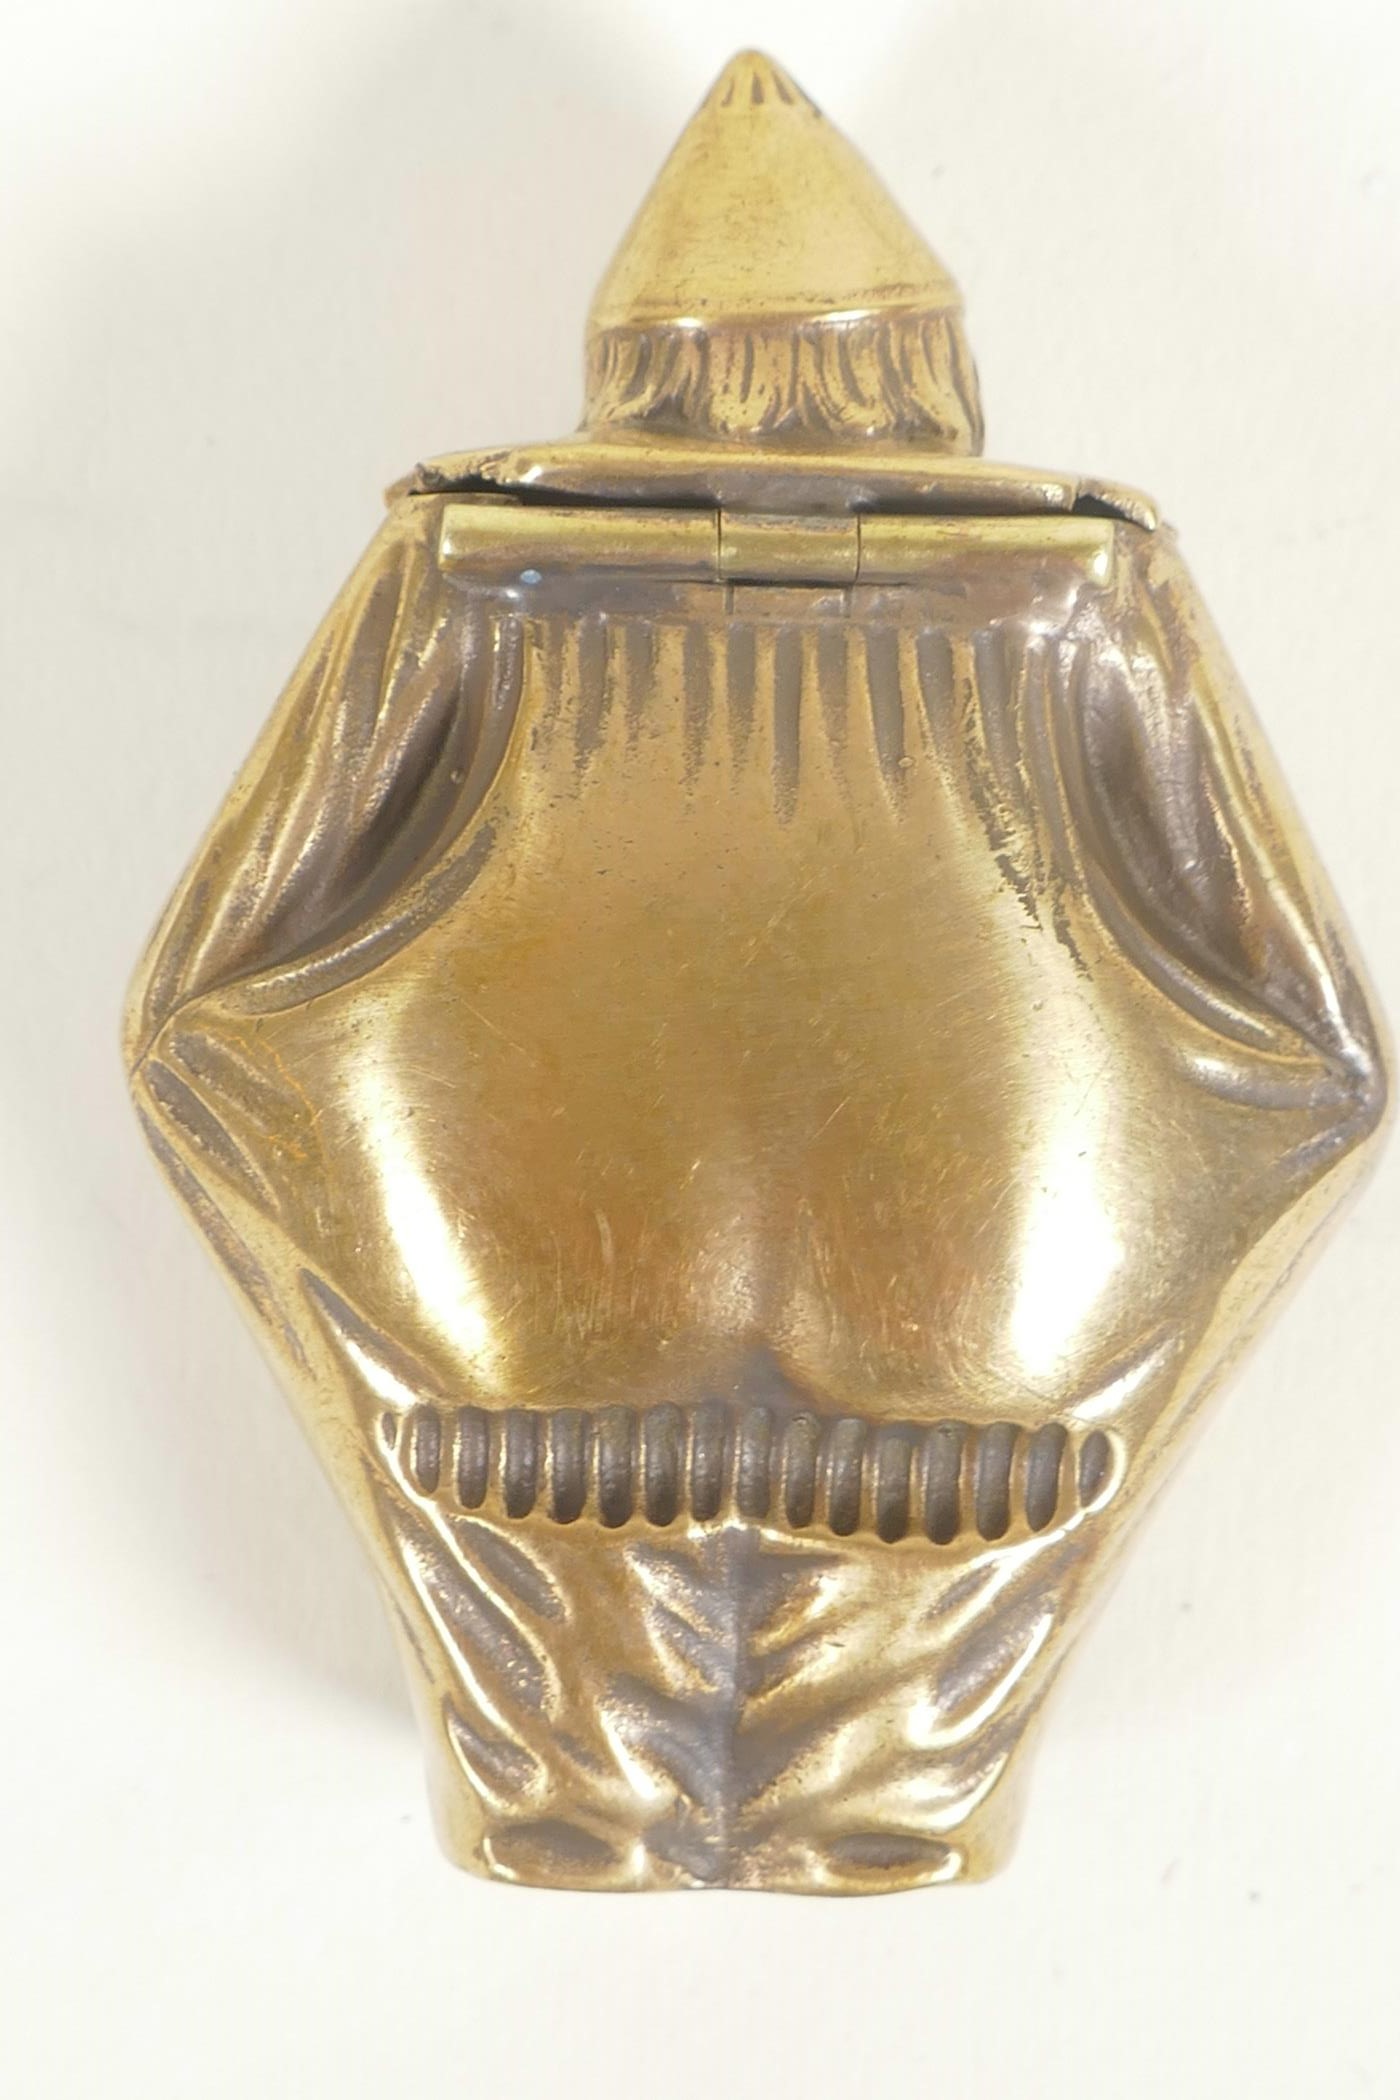 A brass vesta case, 2" long - Image 2 of 3